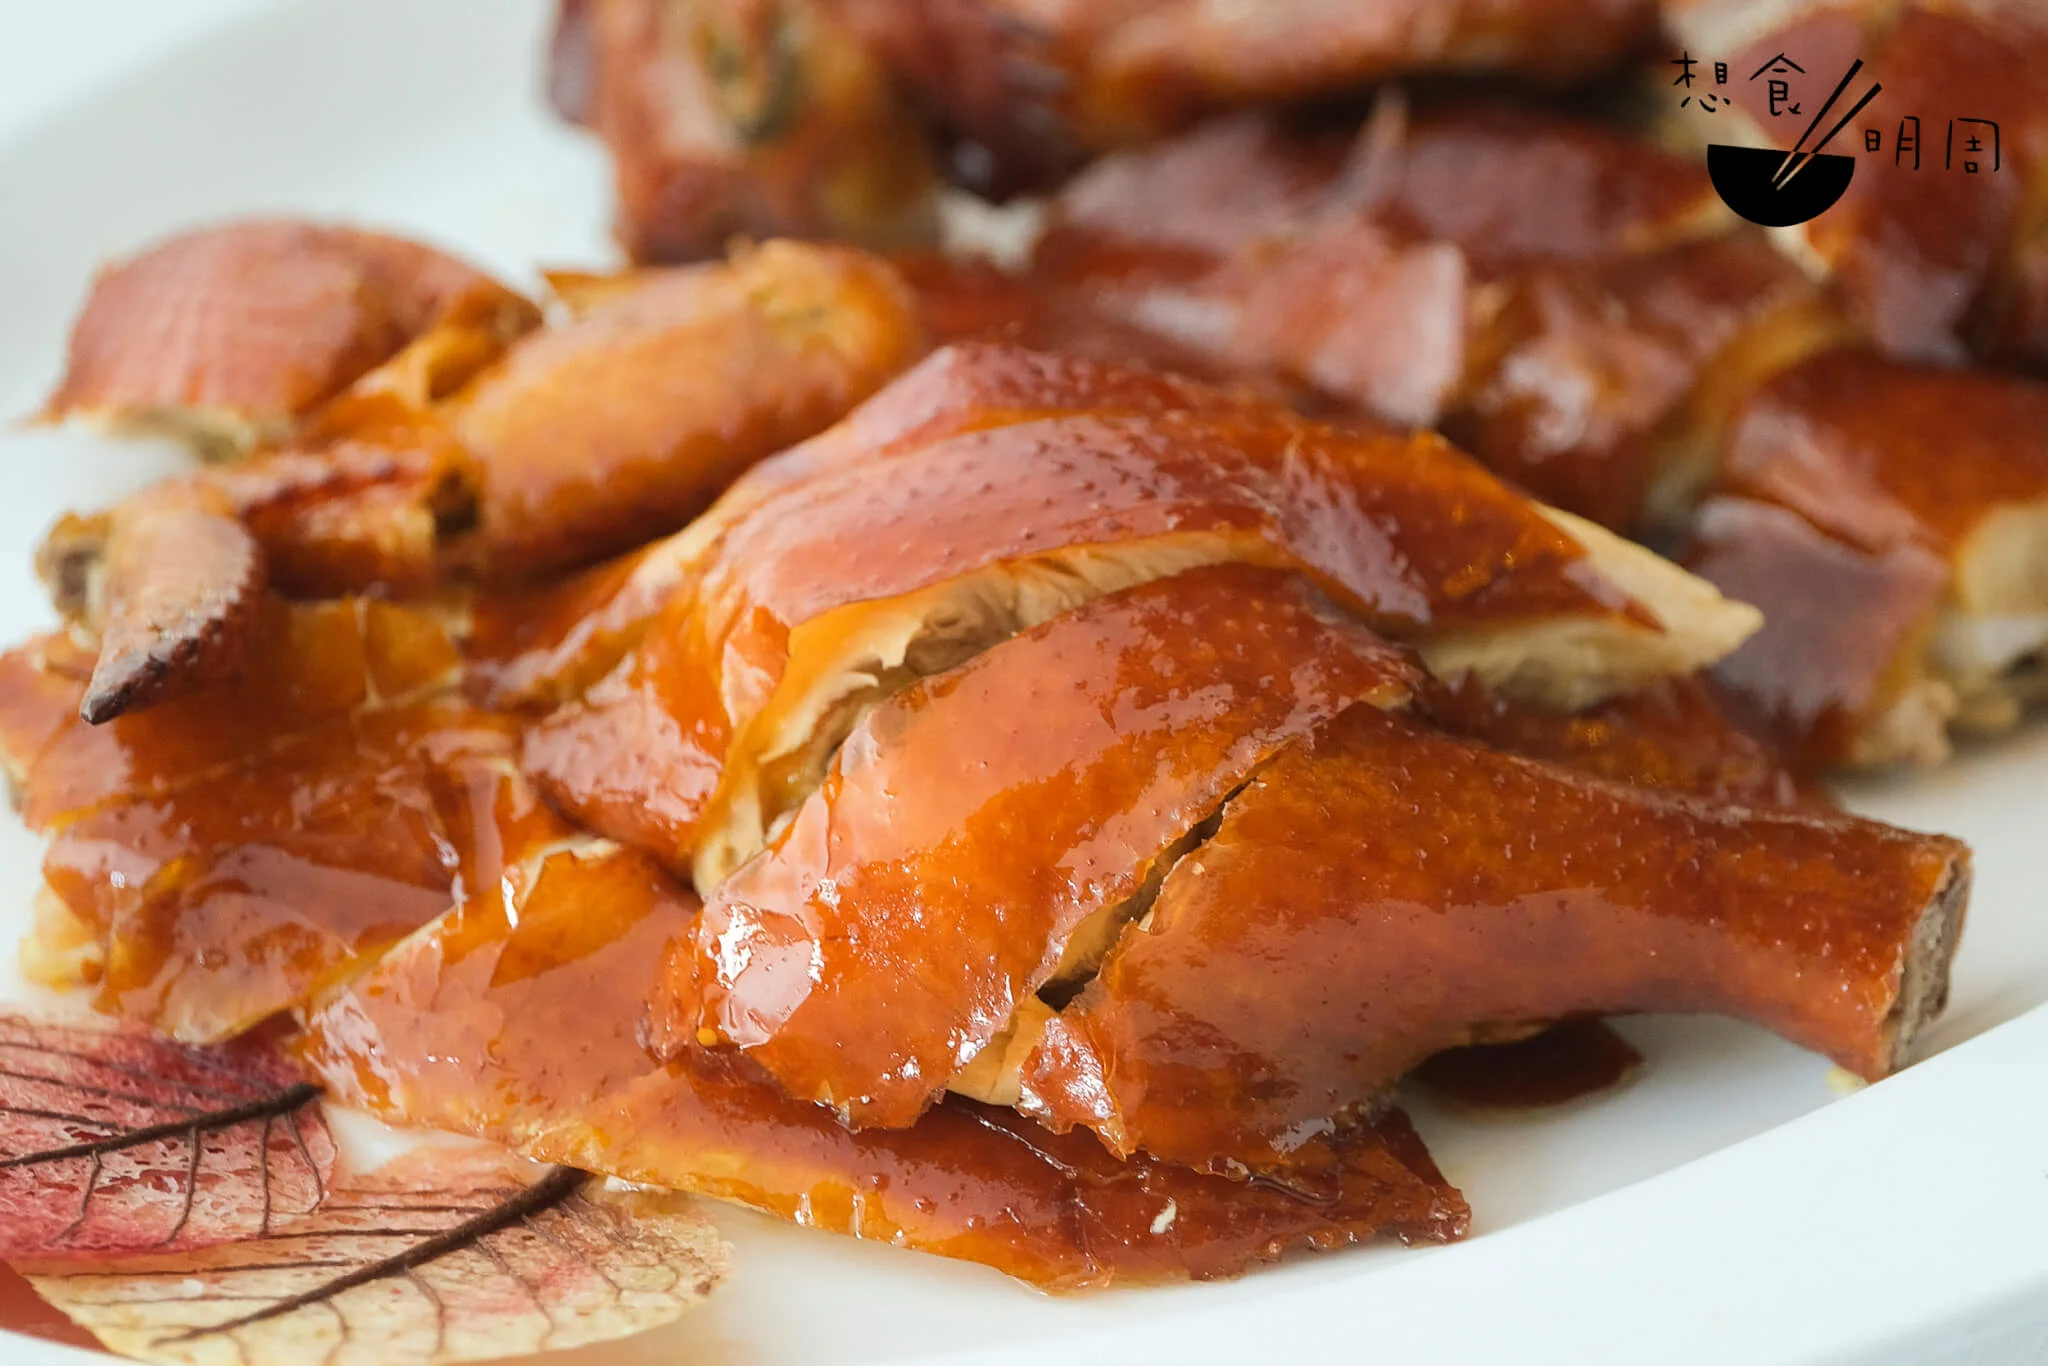 炸子雞的脆皮，來自皮水中的糖分在烹調中焦糖化的效果。